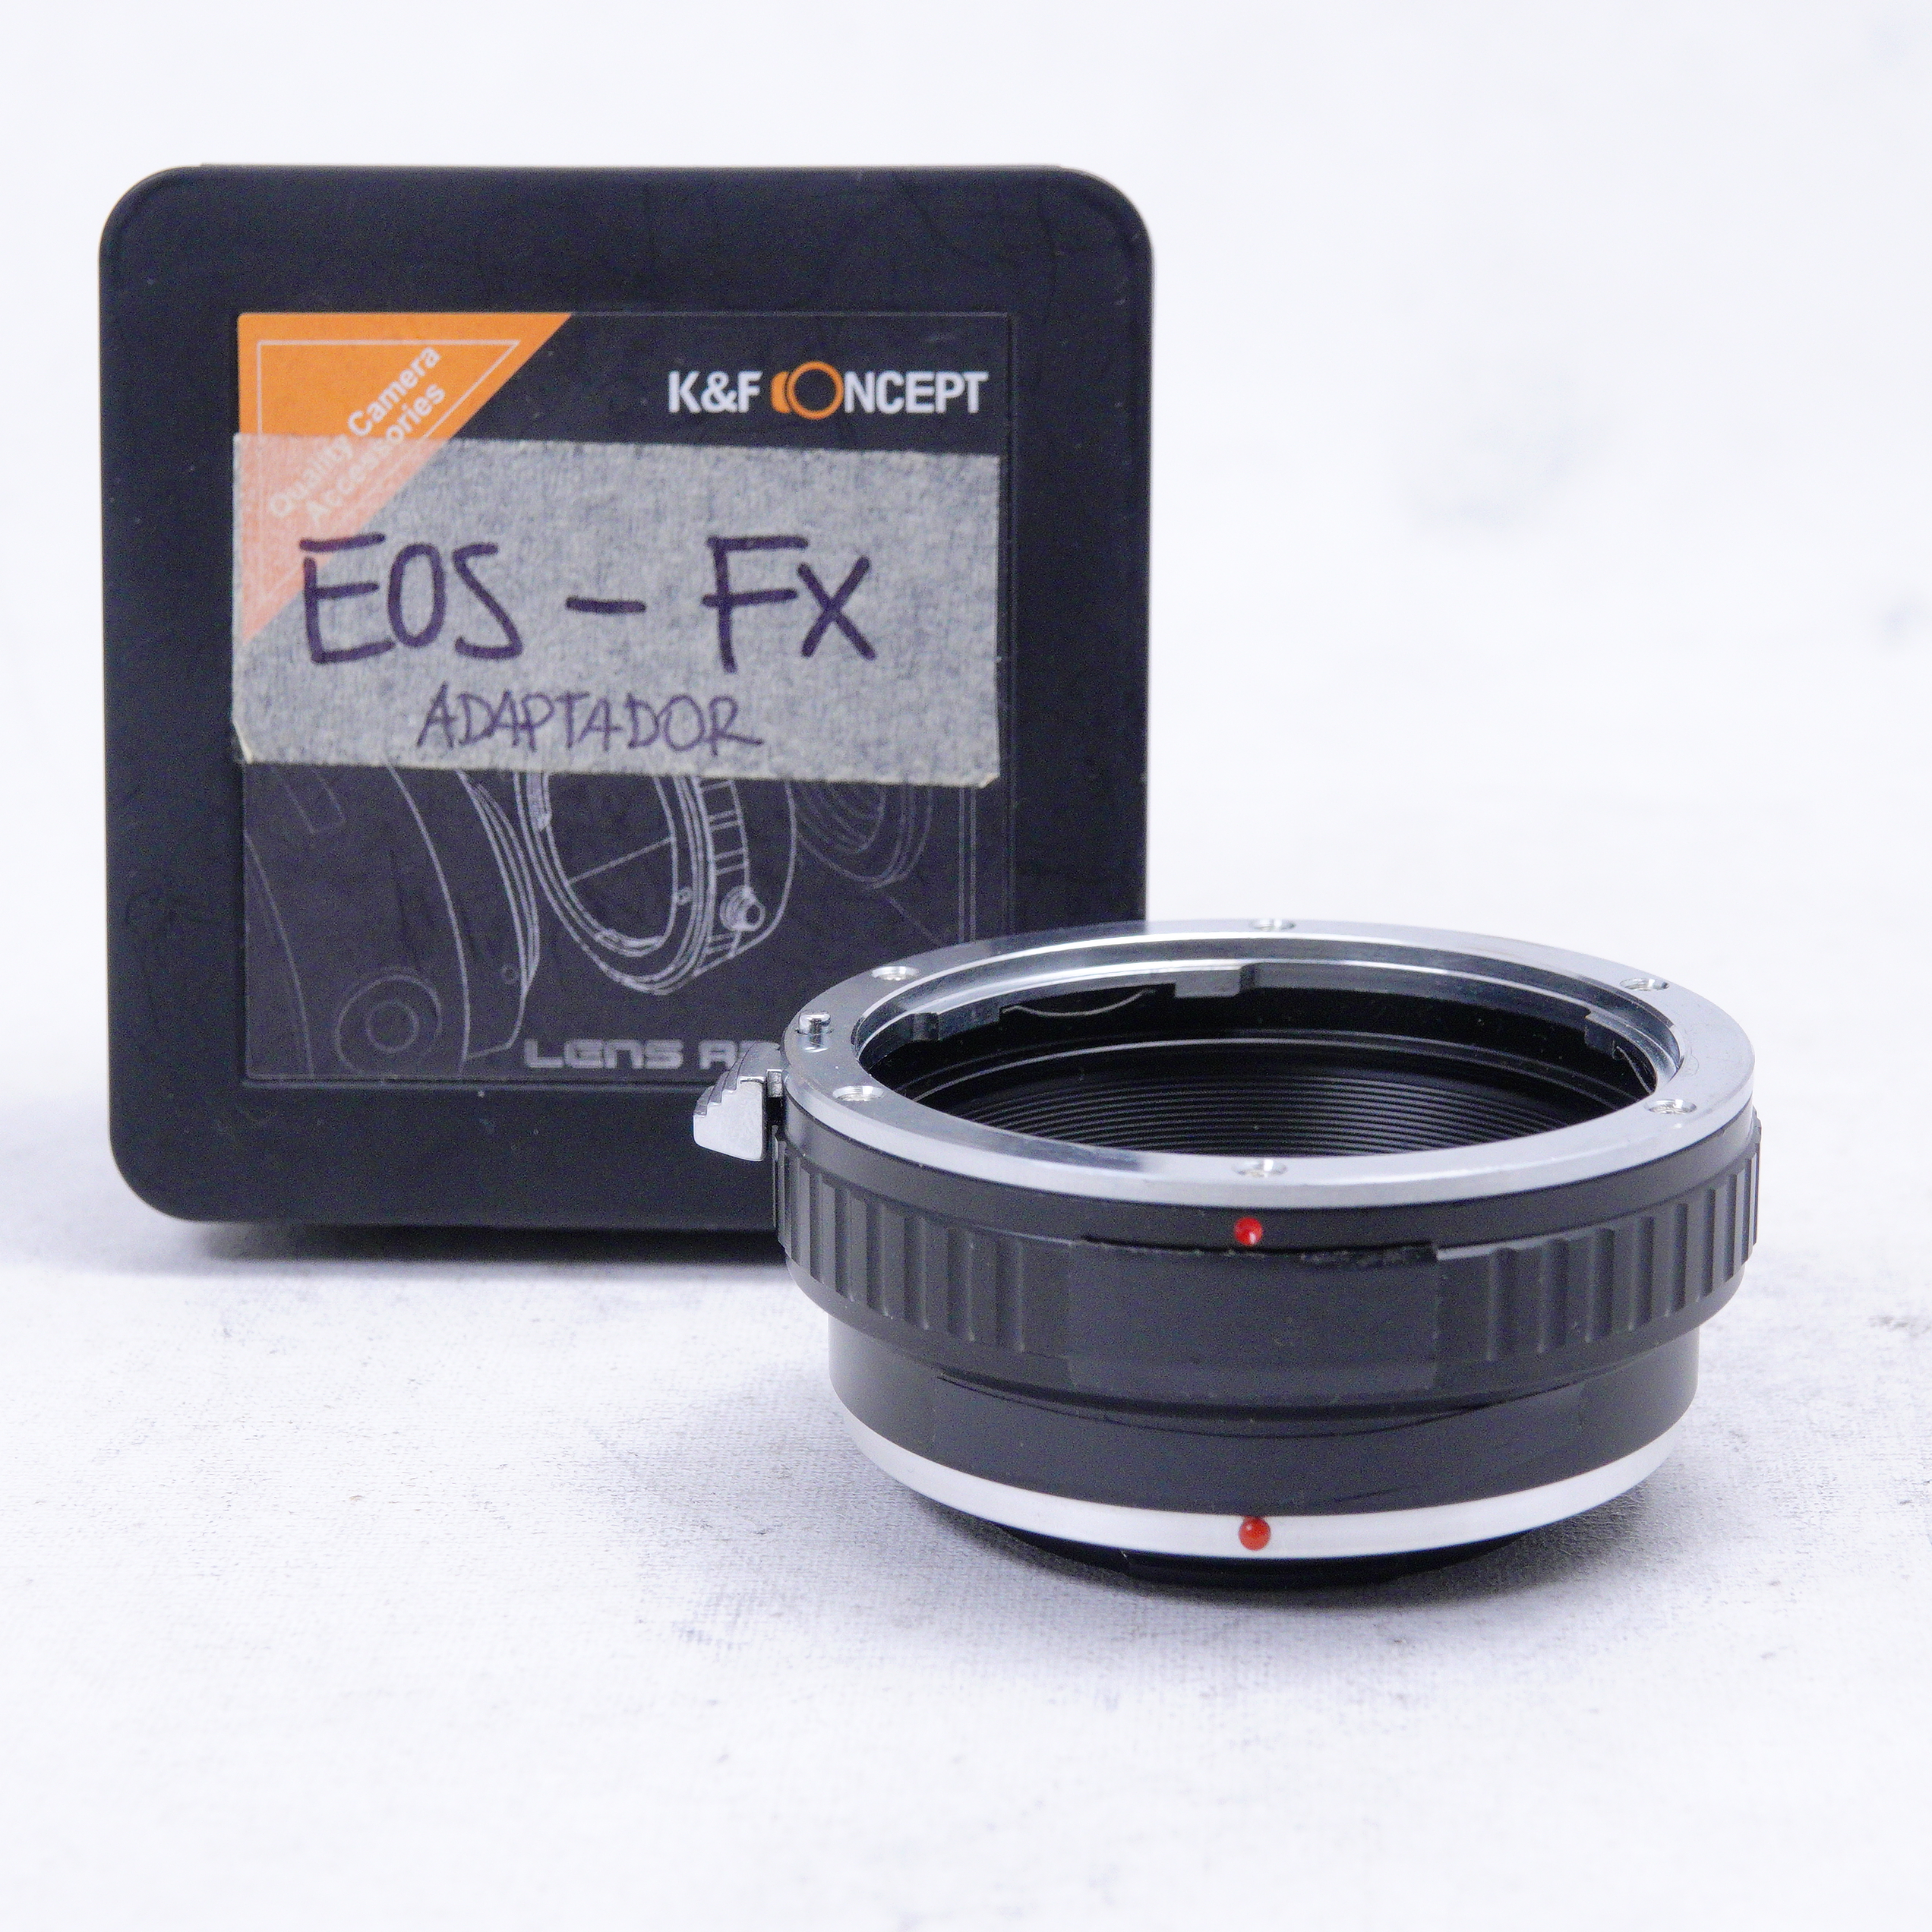 Adaptador K&F Concept a EOS EF/EFS para Fuji FX - Usado